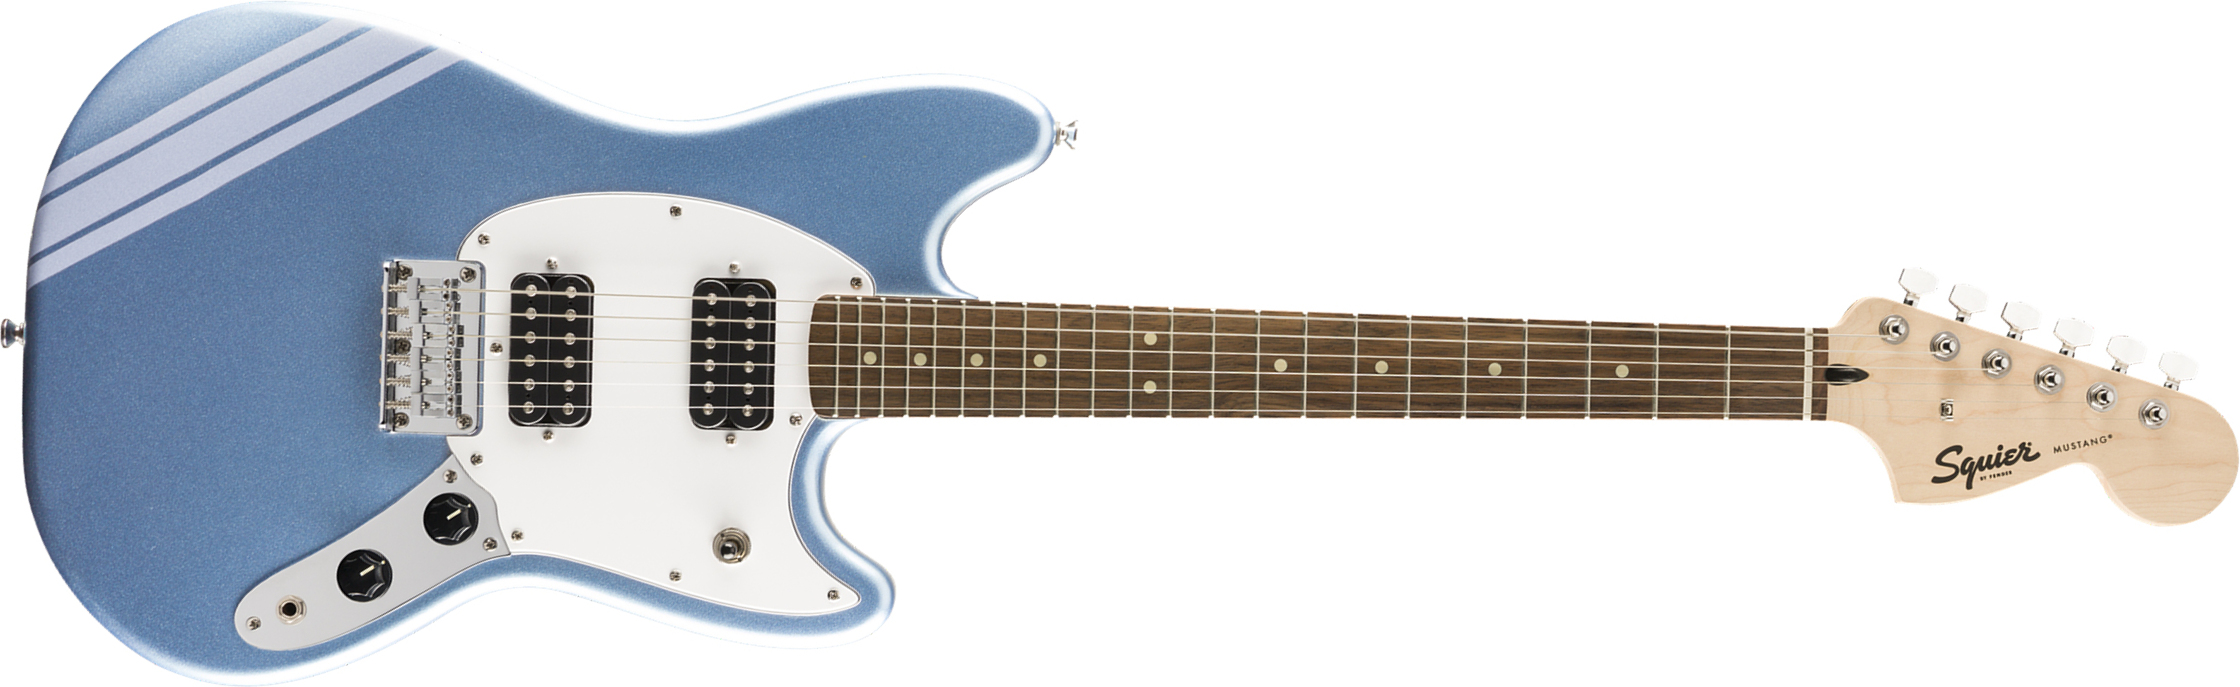 Squier Mustang Bullet Competition Hh Fsr Ht Lau - Lake Placid Blue - Retro-rock elektrische gitaar - Main picture